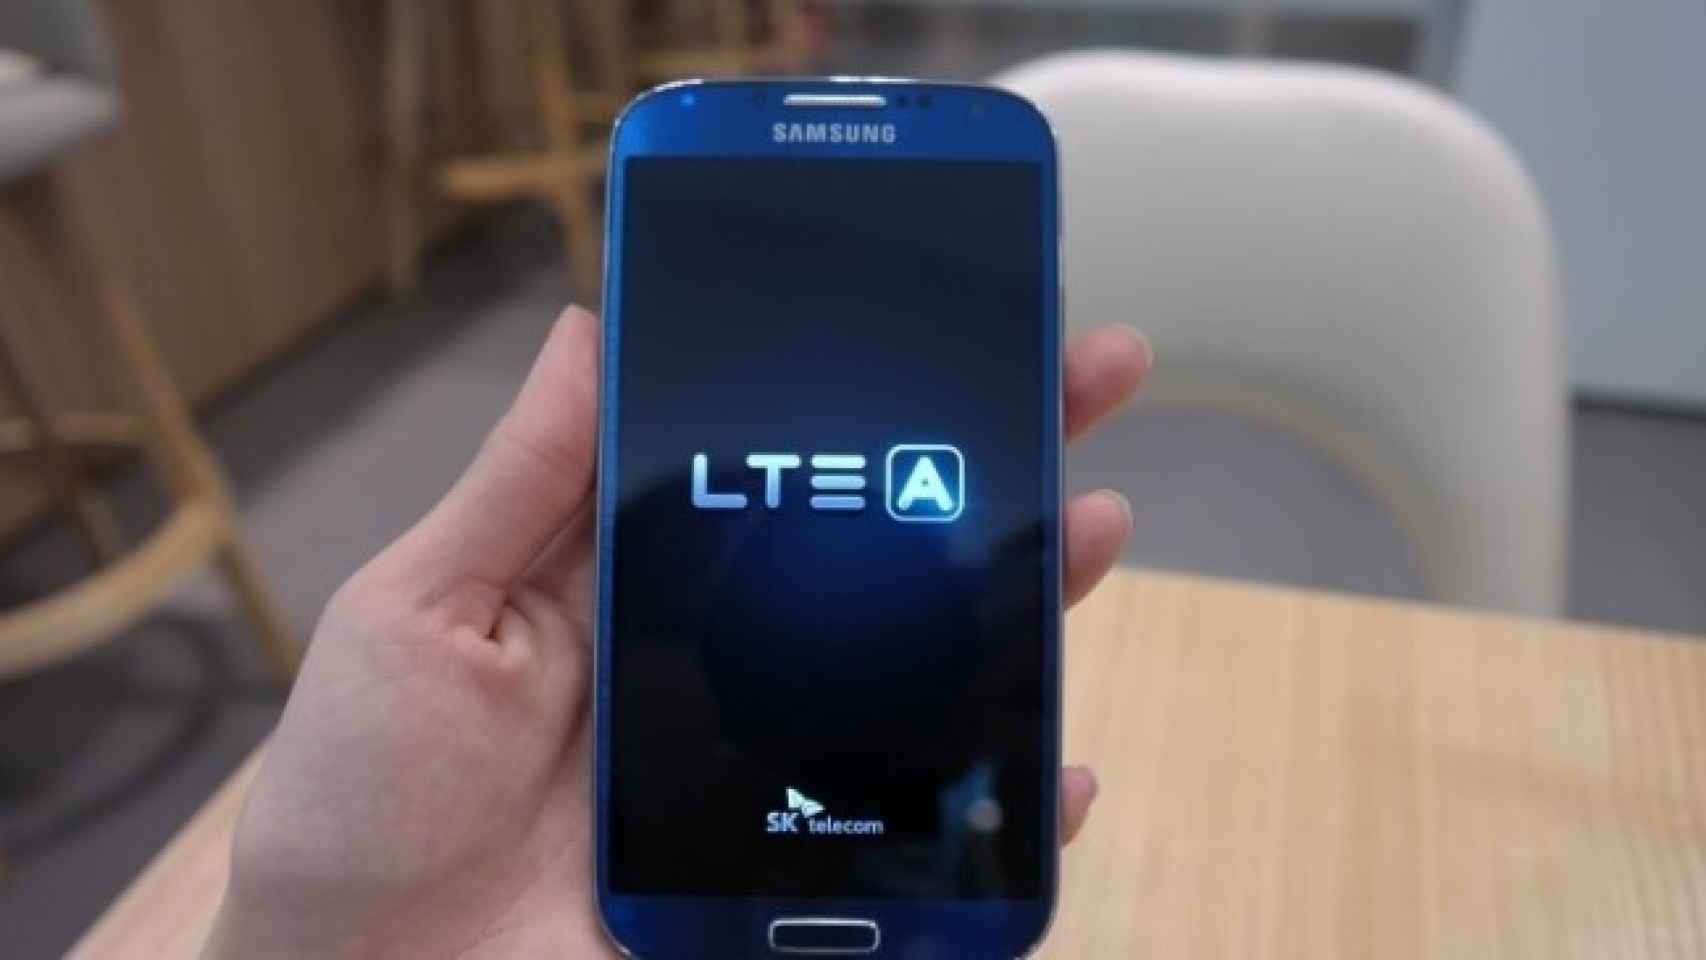 Samsung Galaxy S4 LTE-A y Sony Xperia Z Ultra duplican los benchmarks de generaciones anteriores ¿obsolescencia?